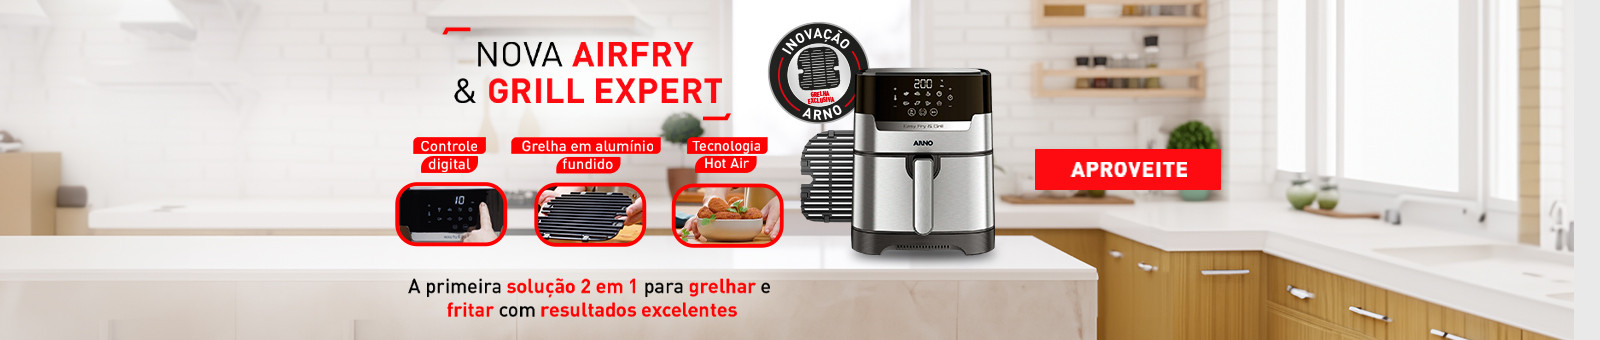 Nova Airfry & Grill Expert. A primeira solução 2 em 1 para grelhar e fritar com resultados excelentes. Aproveite.